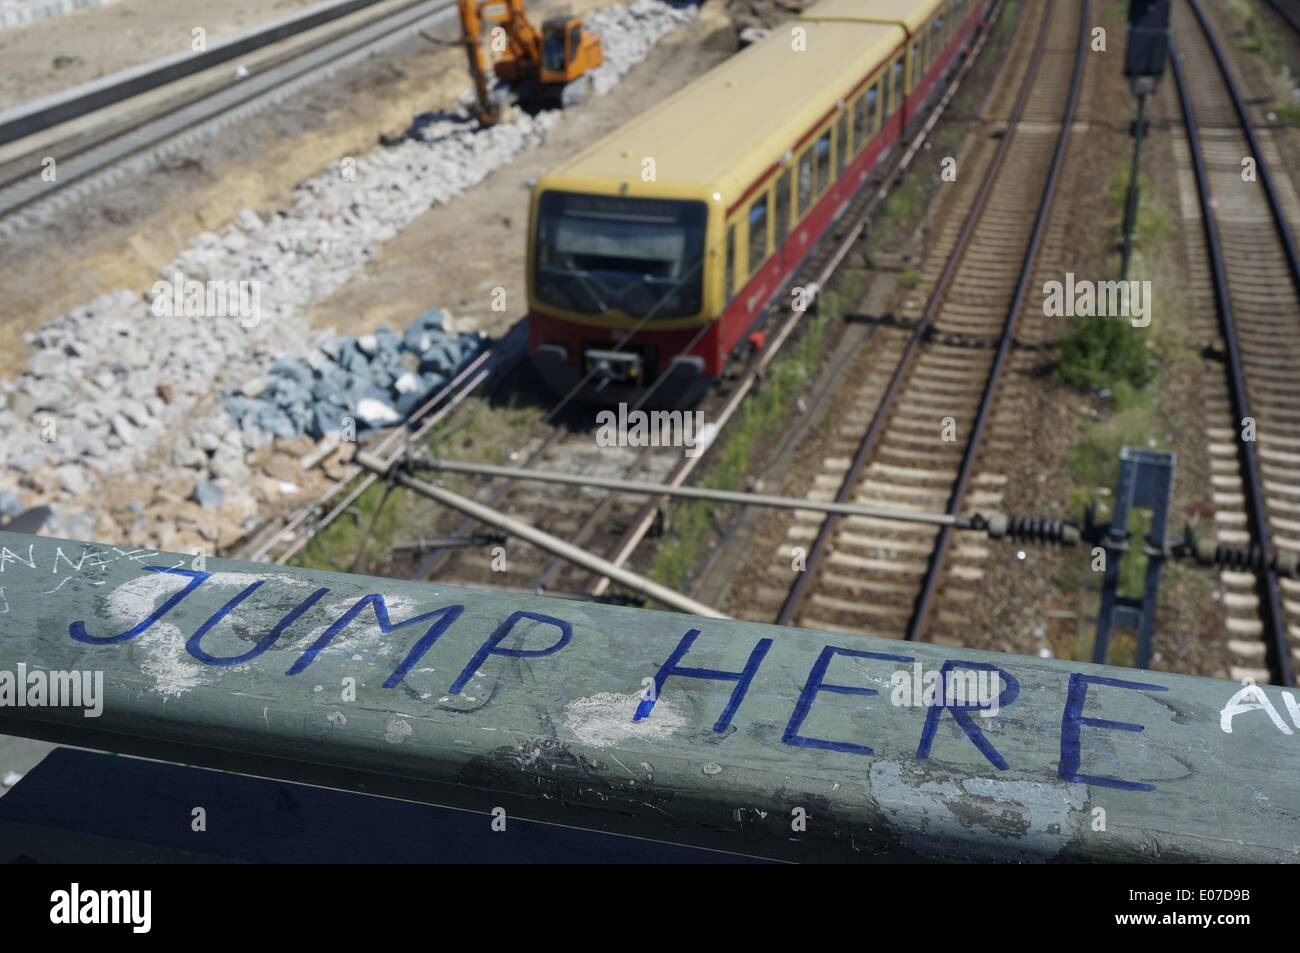 La scritta "Jump Here" è scritta sul corrimano del ponte Warschauer Bruecke, che inarcava i binari e un treno cittadino nel quartiere berlinese di Friedrichshain, Germania, 21 luglio 2013. Fotoarchiv für Zeitgeschichte /Steinach - SENZA FILI - Foto Stock